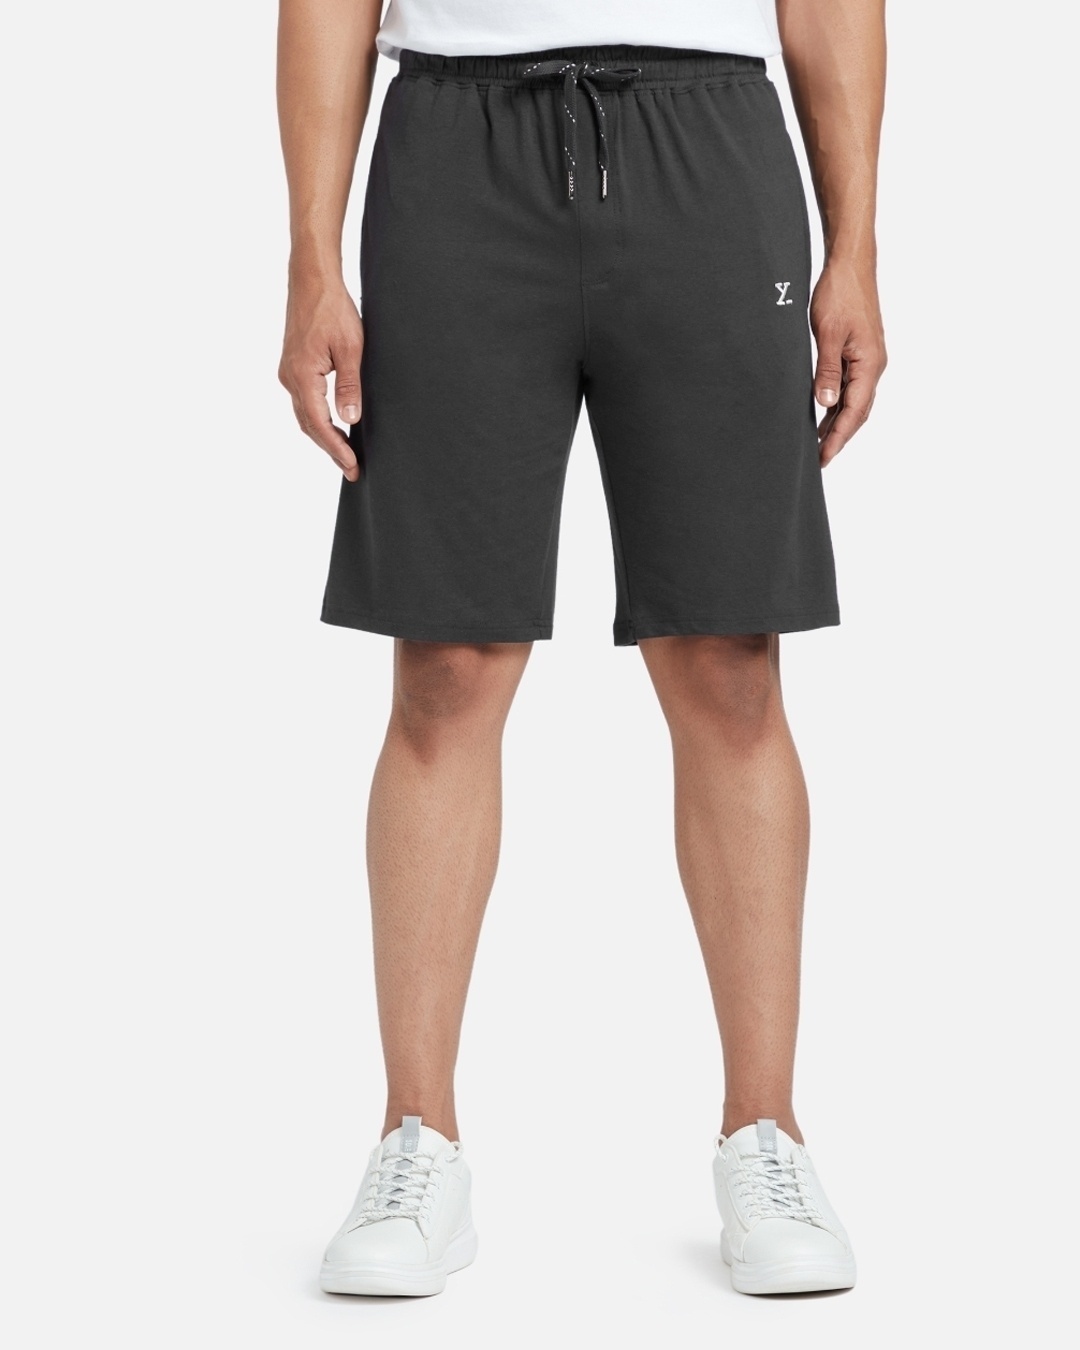 Shop Pack of 2 Men's Black & Grey Shorts-Back